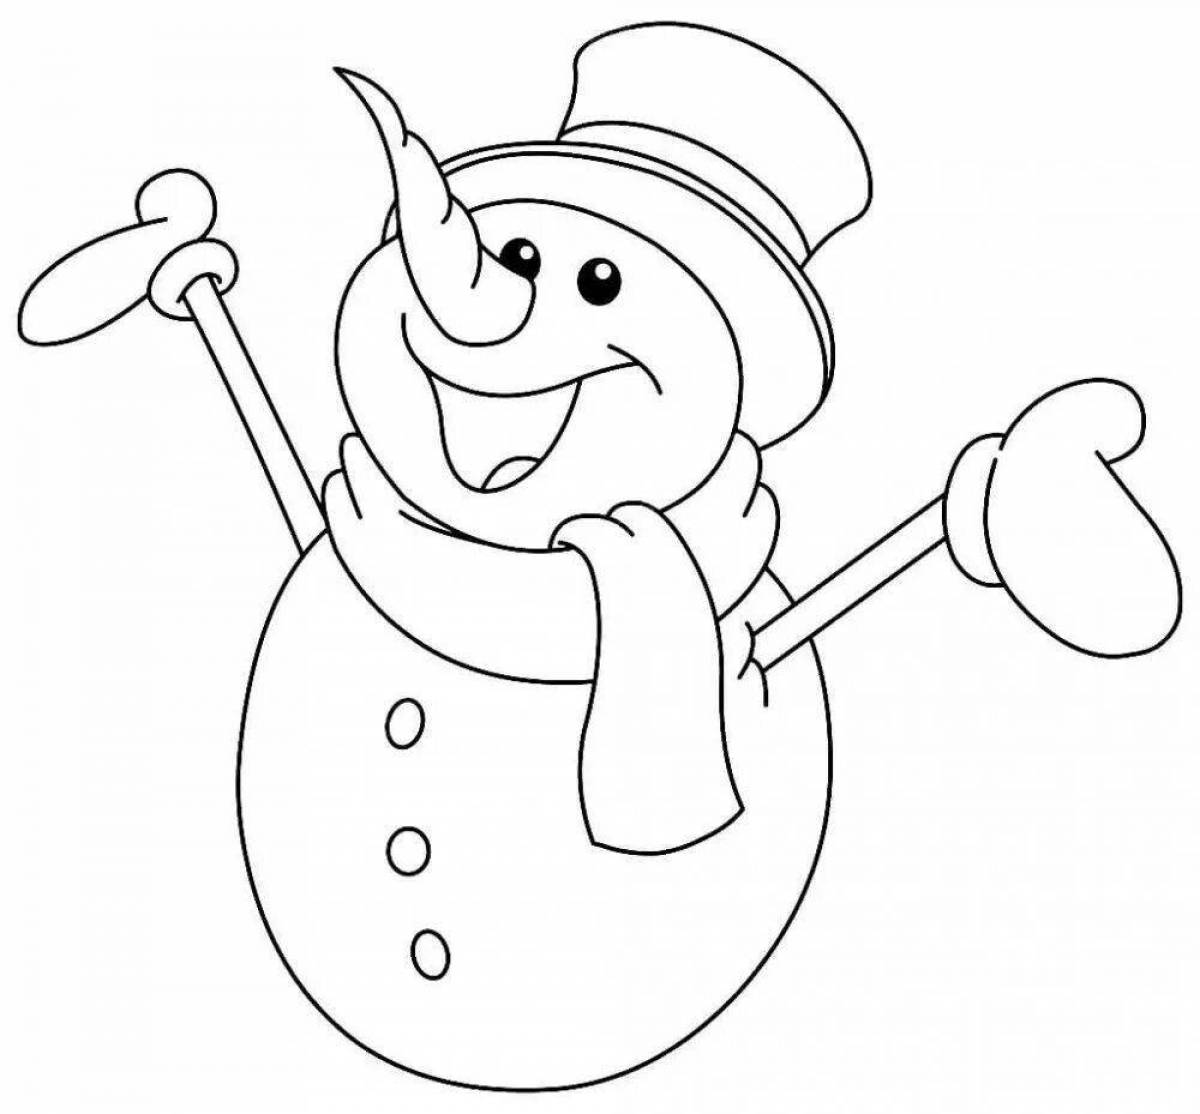 Веселая раскраска смешные снеговики для детей